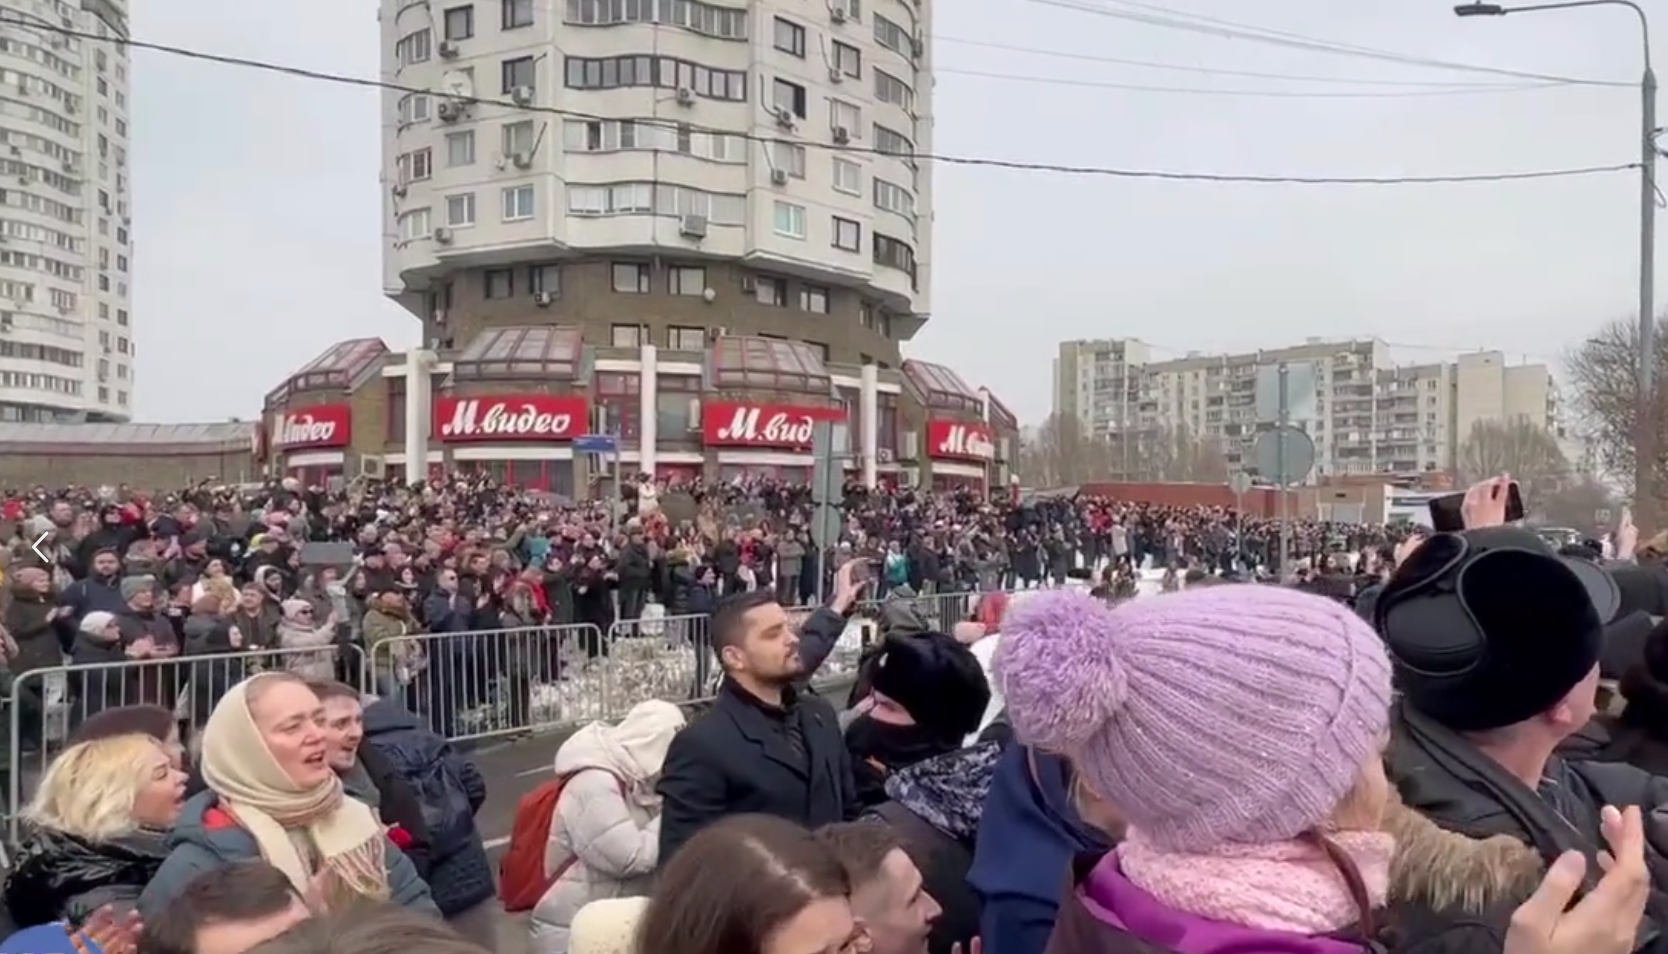 Собравшиеся проститься с Алексеем Навальным скандируют "Ты не боялся и мы не боимся", кадр трансляции SotaVision